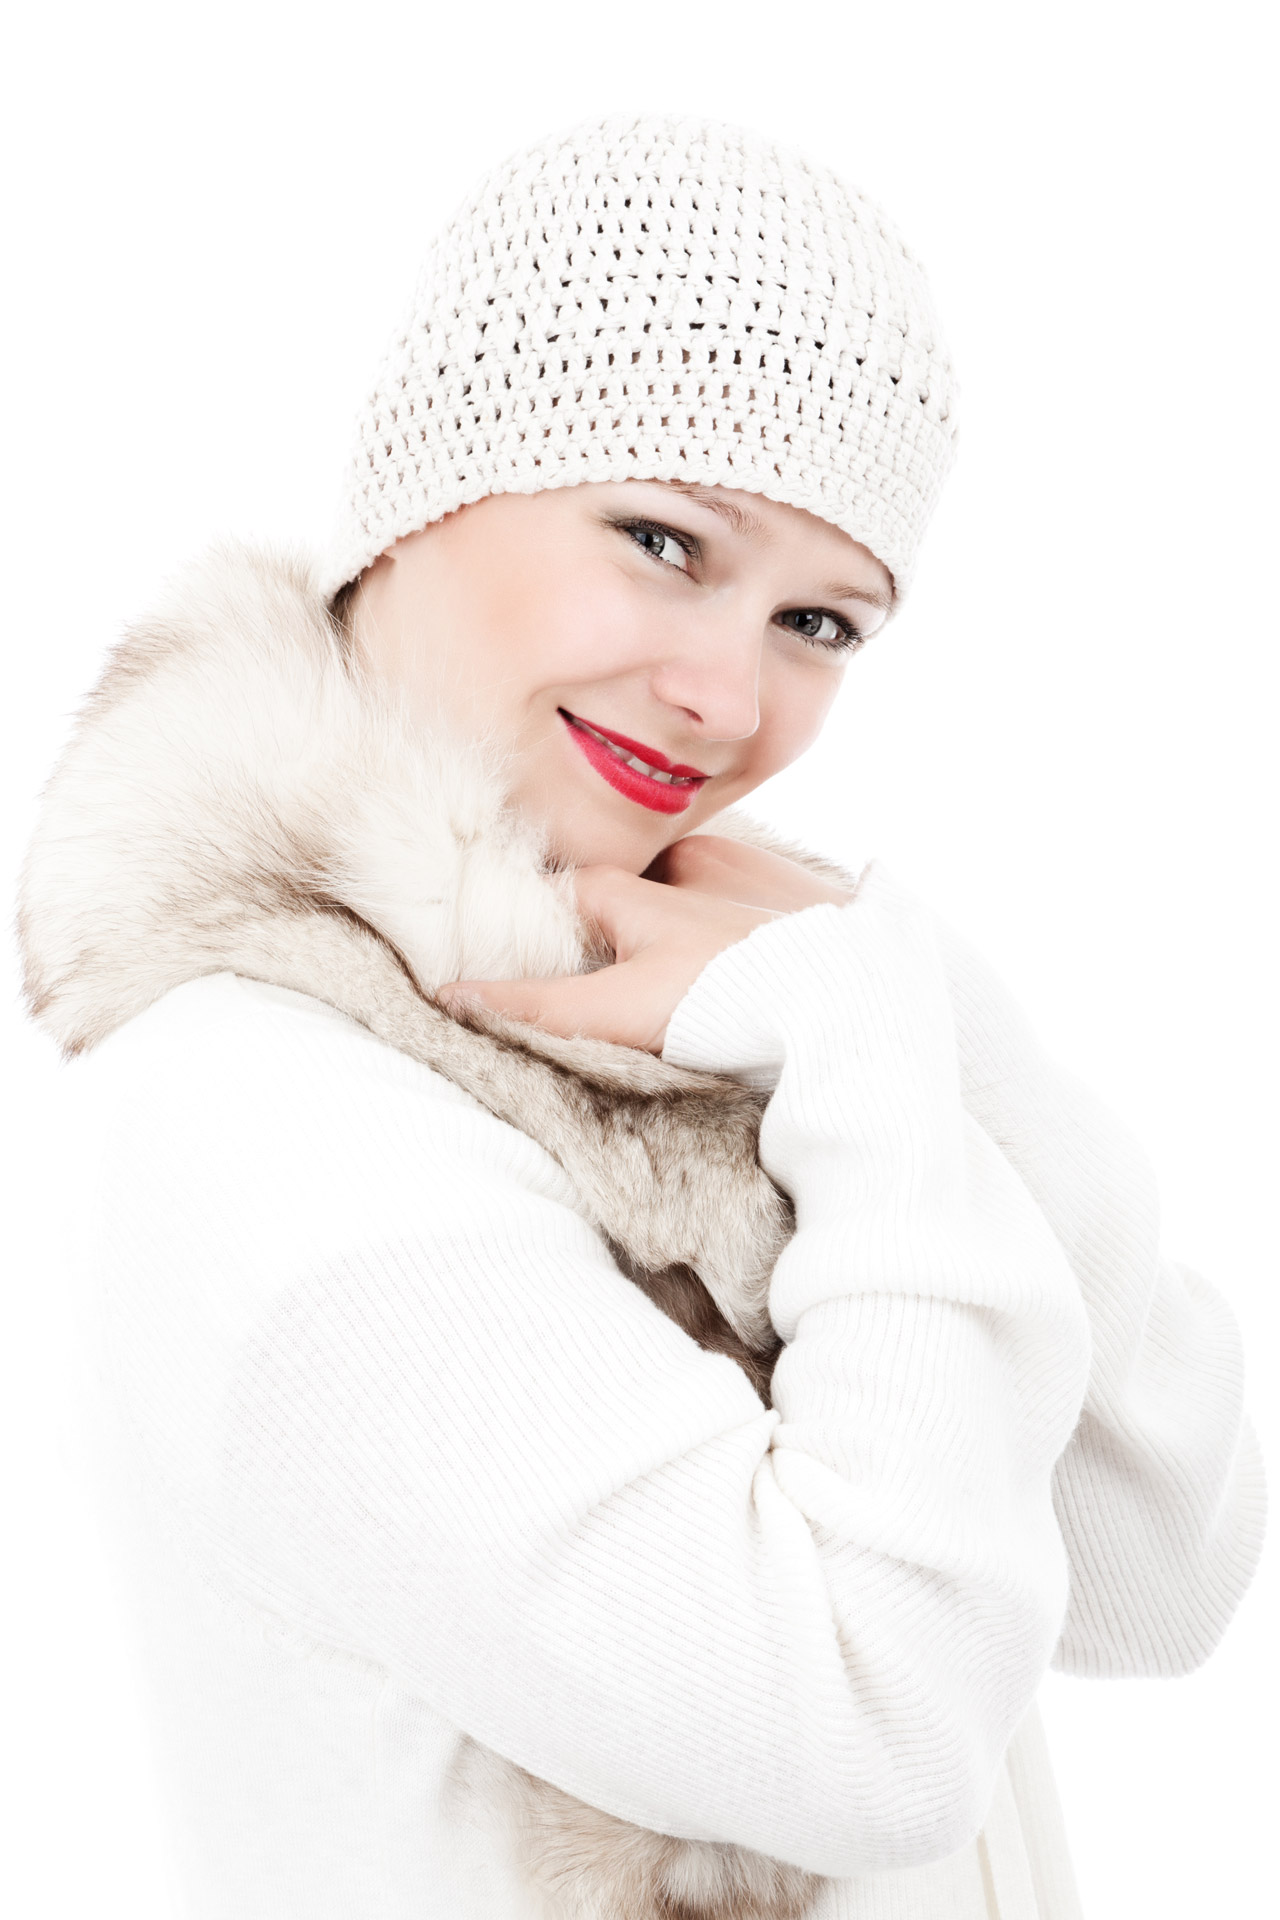 https://www.publicdomainpictures.net/pictures/20000/velka/female-model-in-winter.jpg